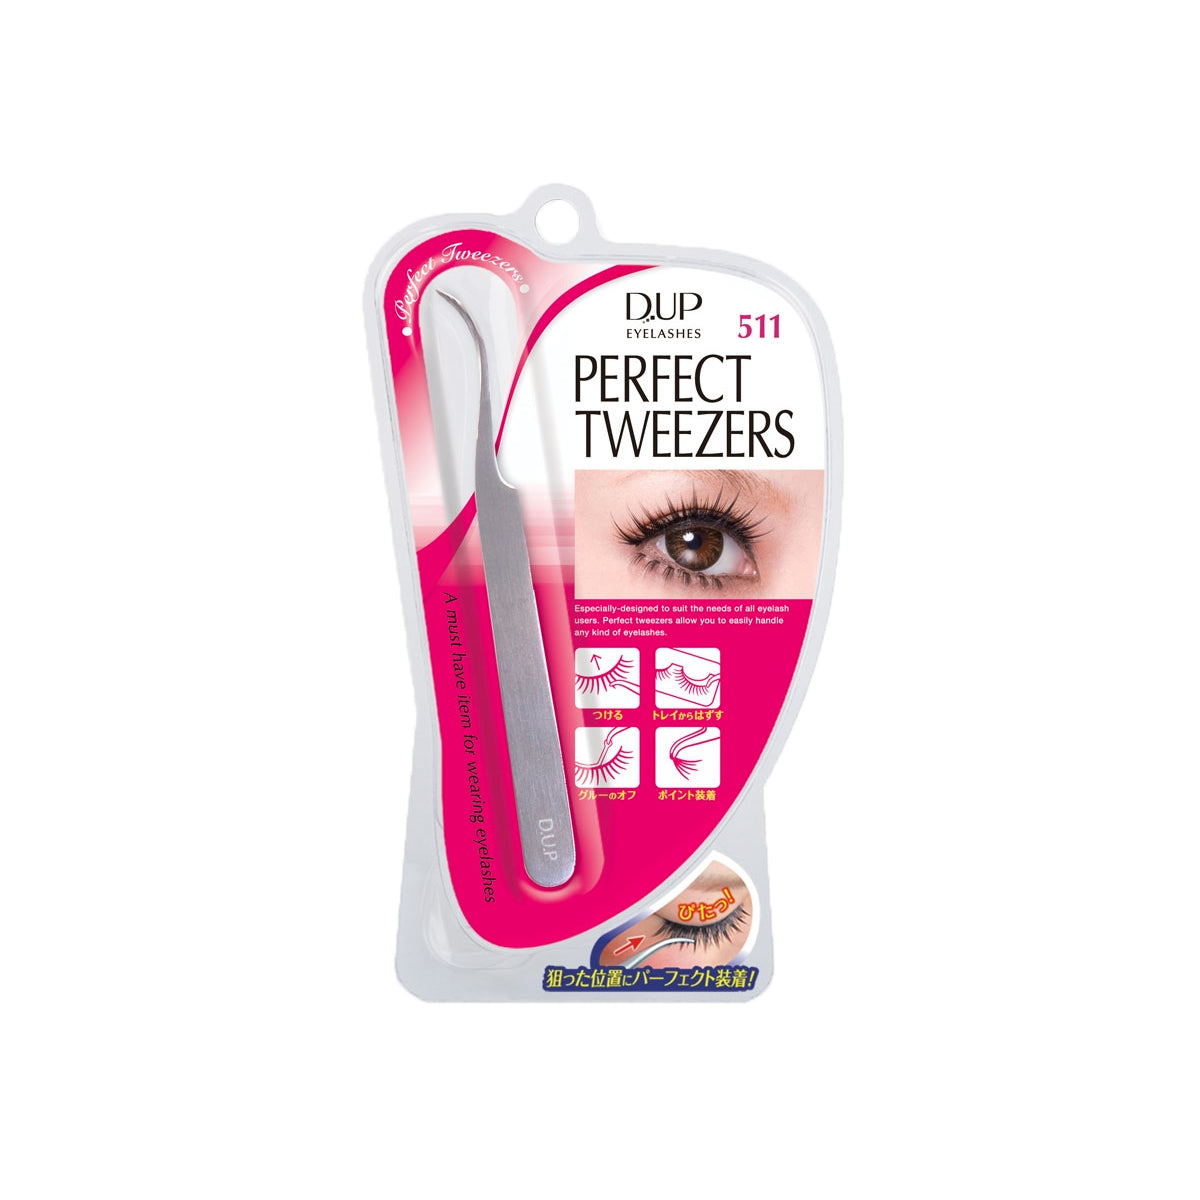 DUP Perfect Tweezers Tweezers D-UP   